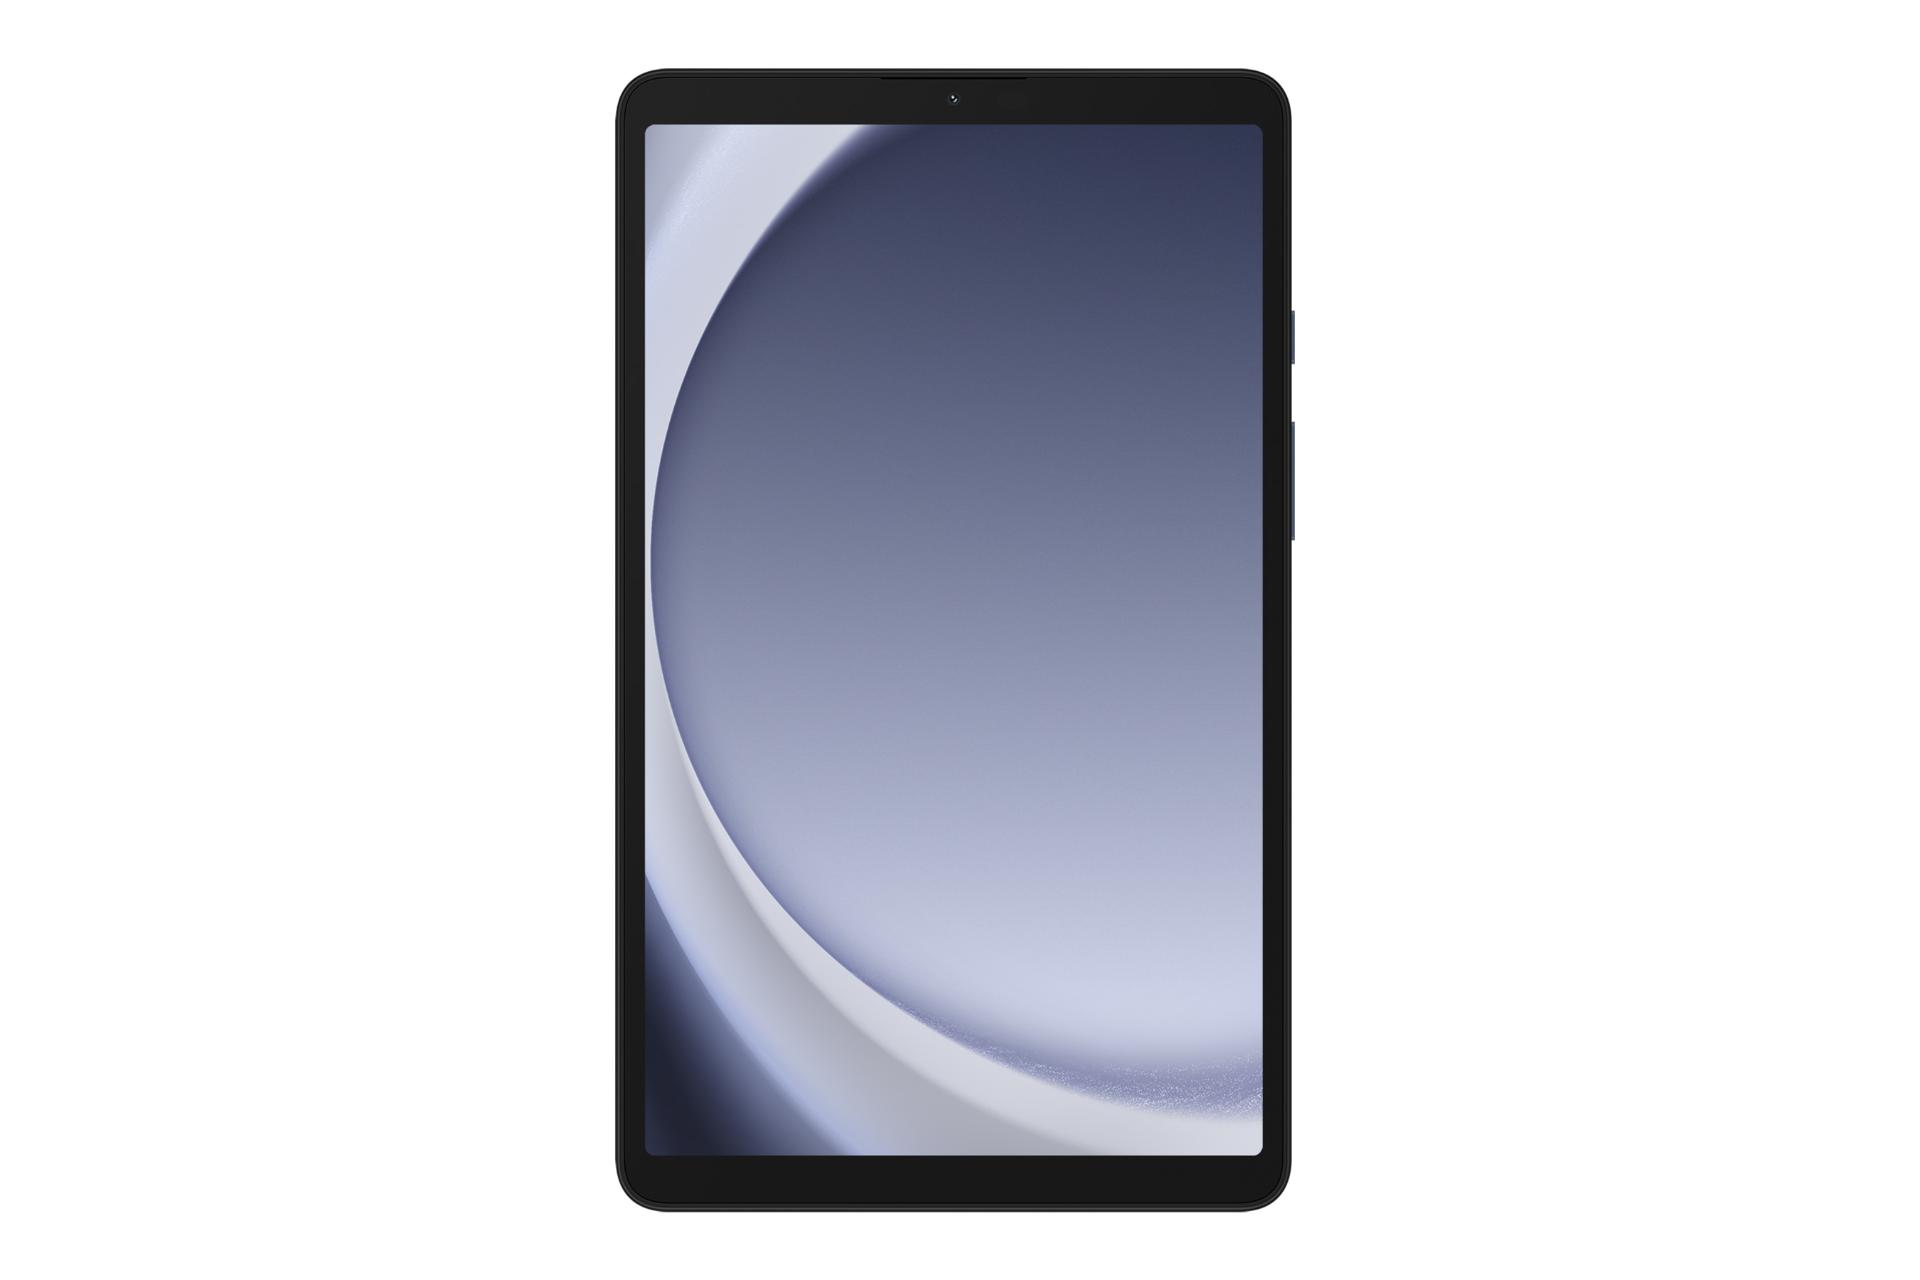 نمای روبه‌روی تبلت گلکسی تب A9 سامسونگ / Samsung Galaxy Tab A9 با نمایشگر روشن و نمایش دوربین سلفی و حاشیه های نمایشگر رنگ آبی